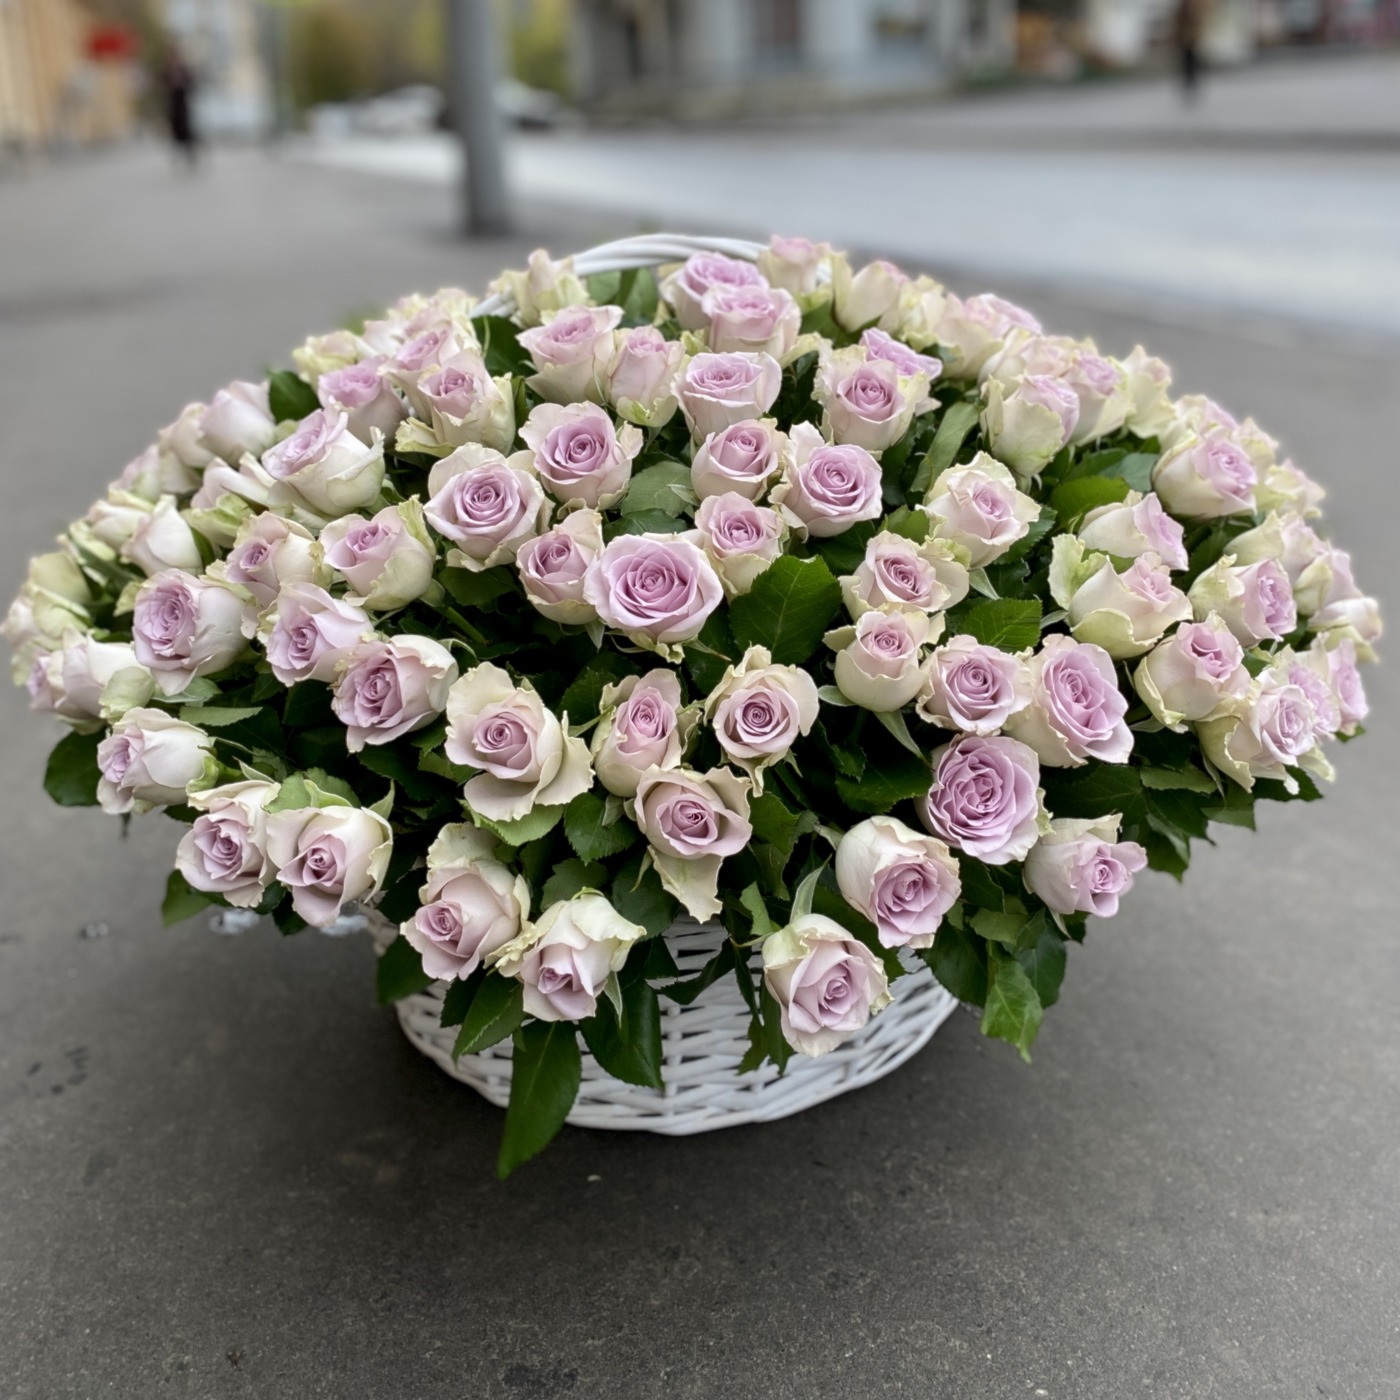 Цветы в корзине дешево купить сколько стоит доставка цветов курьером в москве